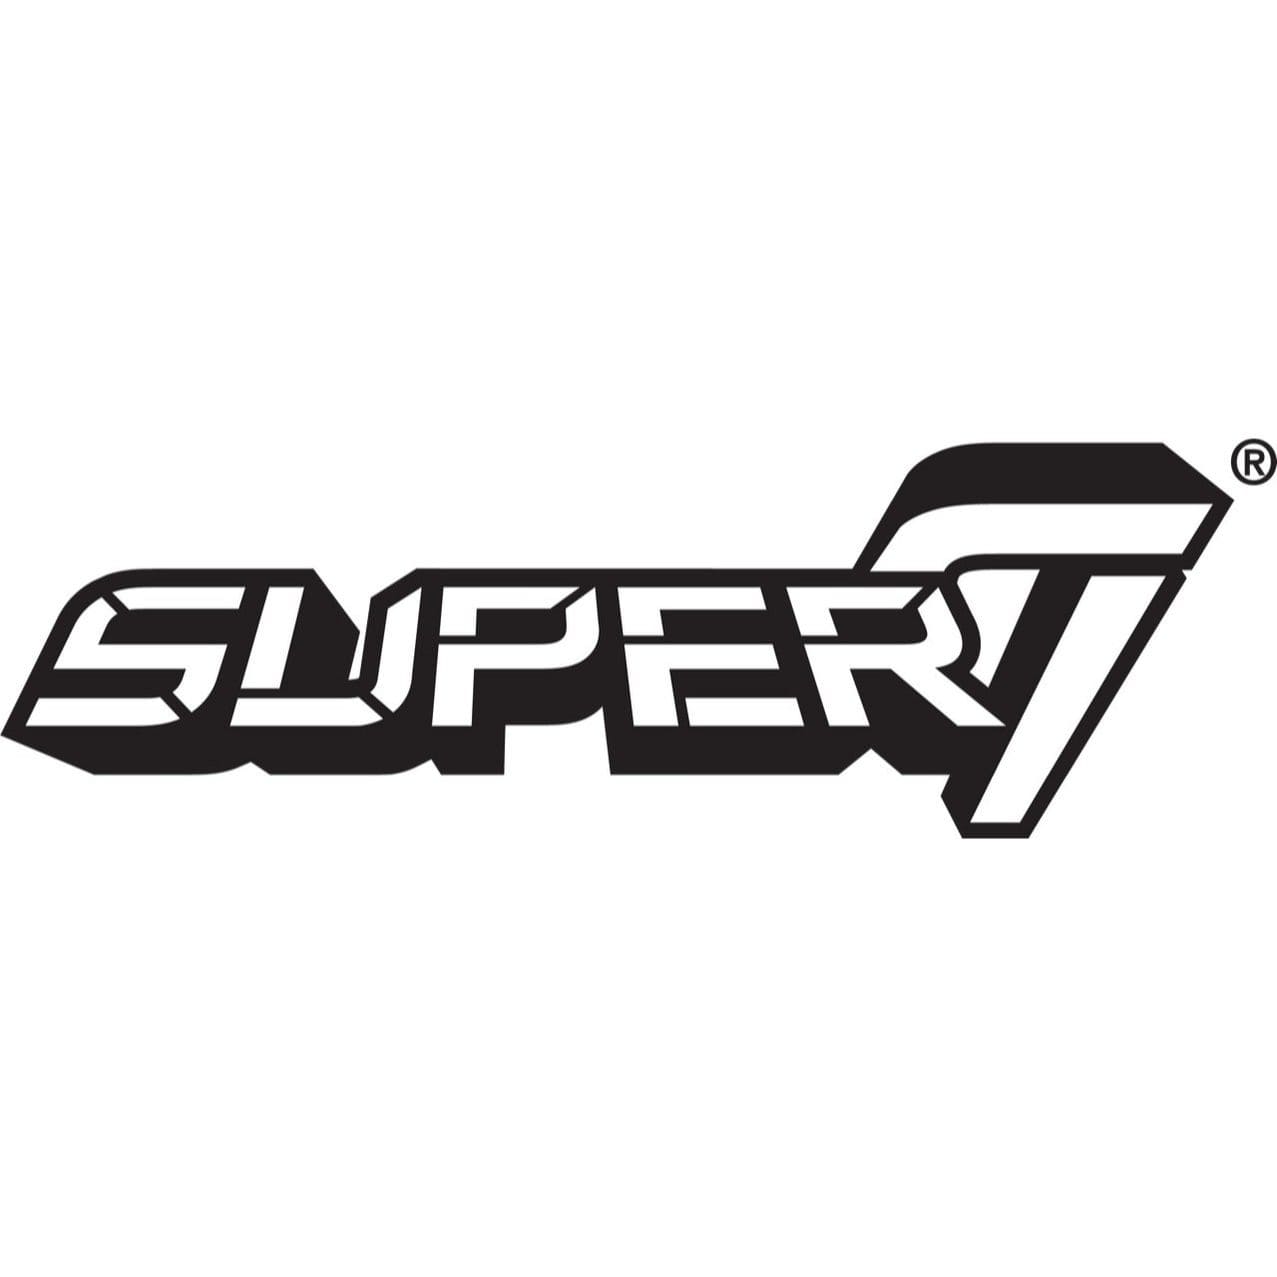 Super7 - Poggers